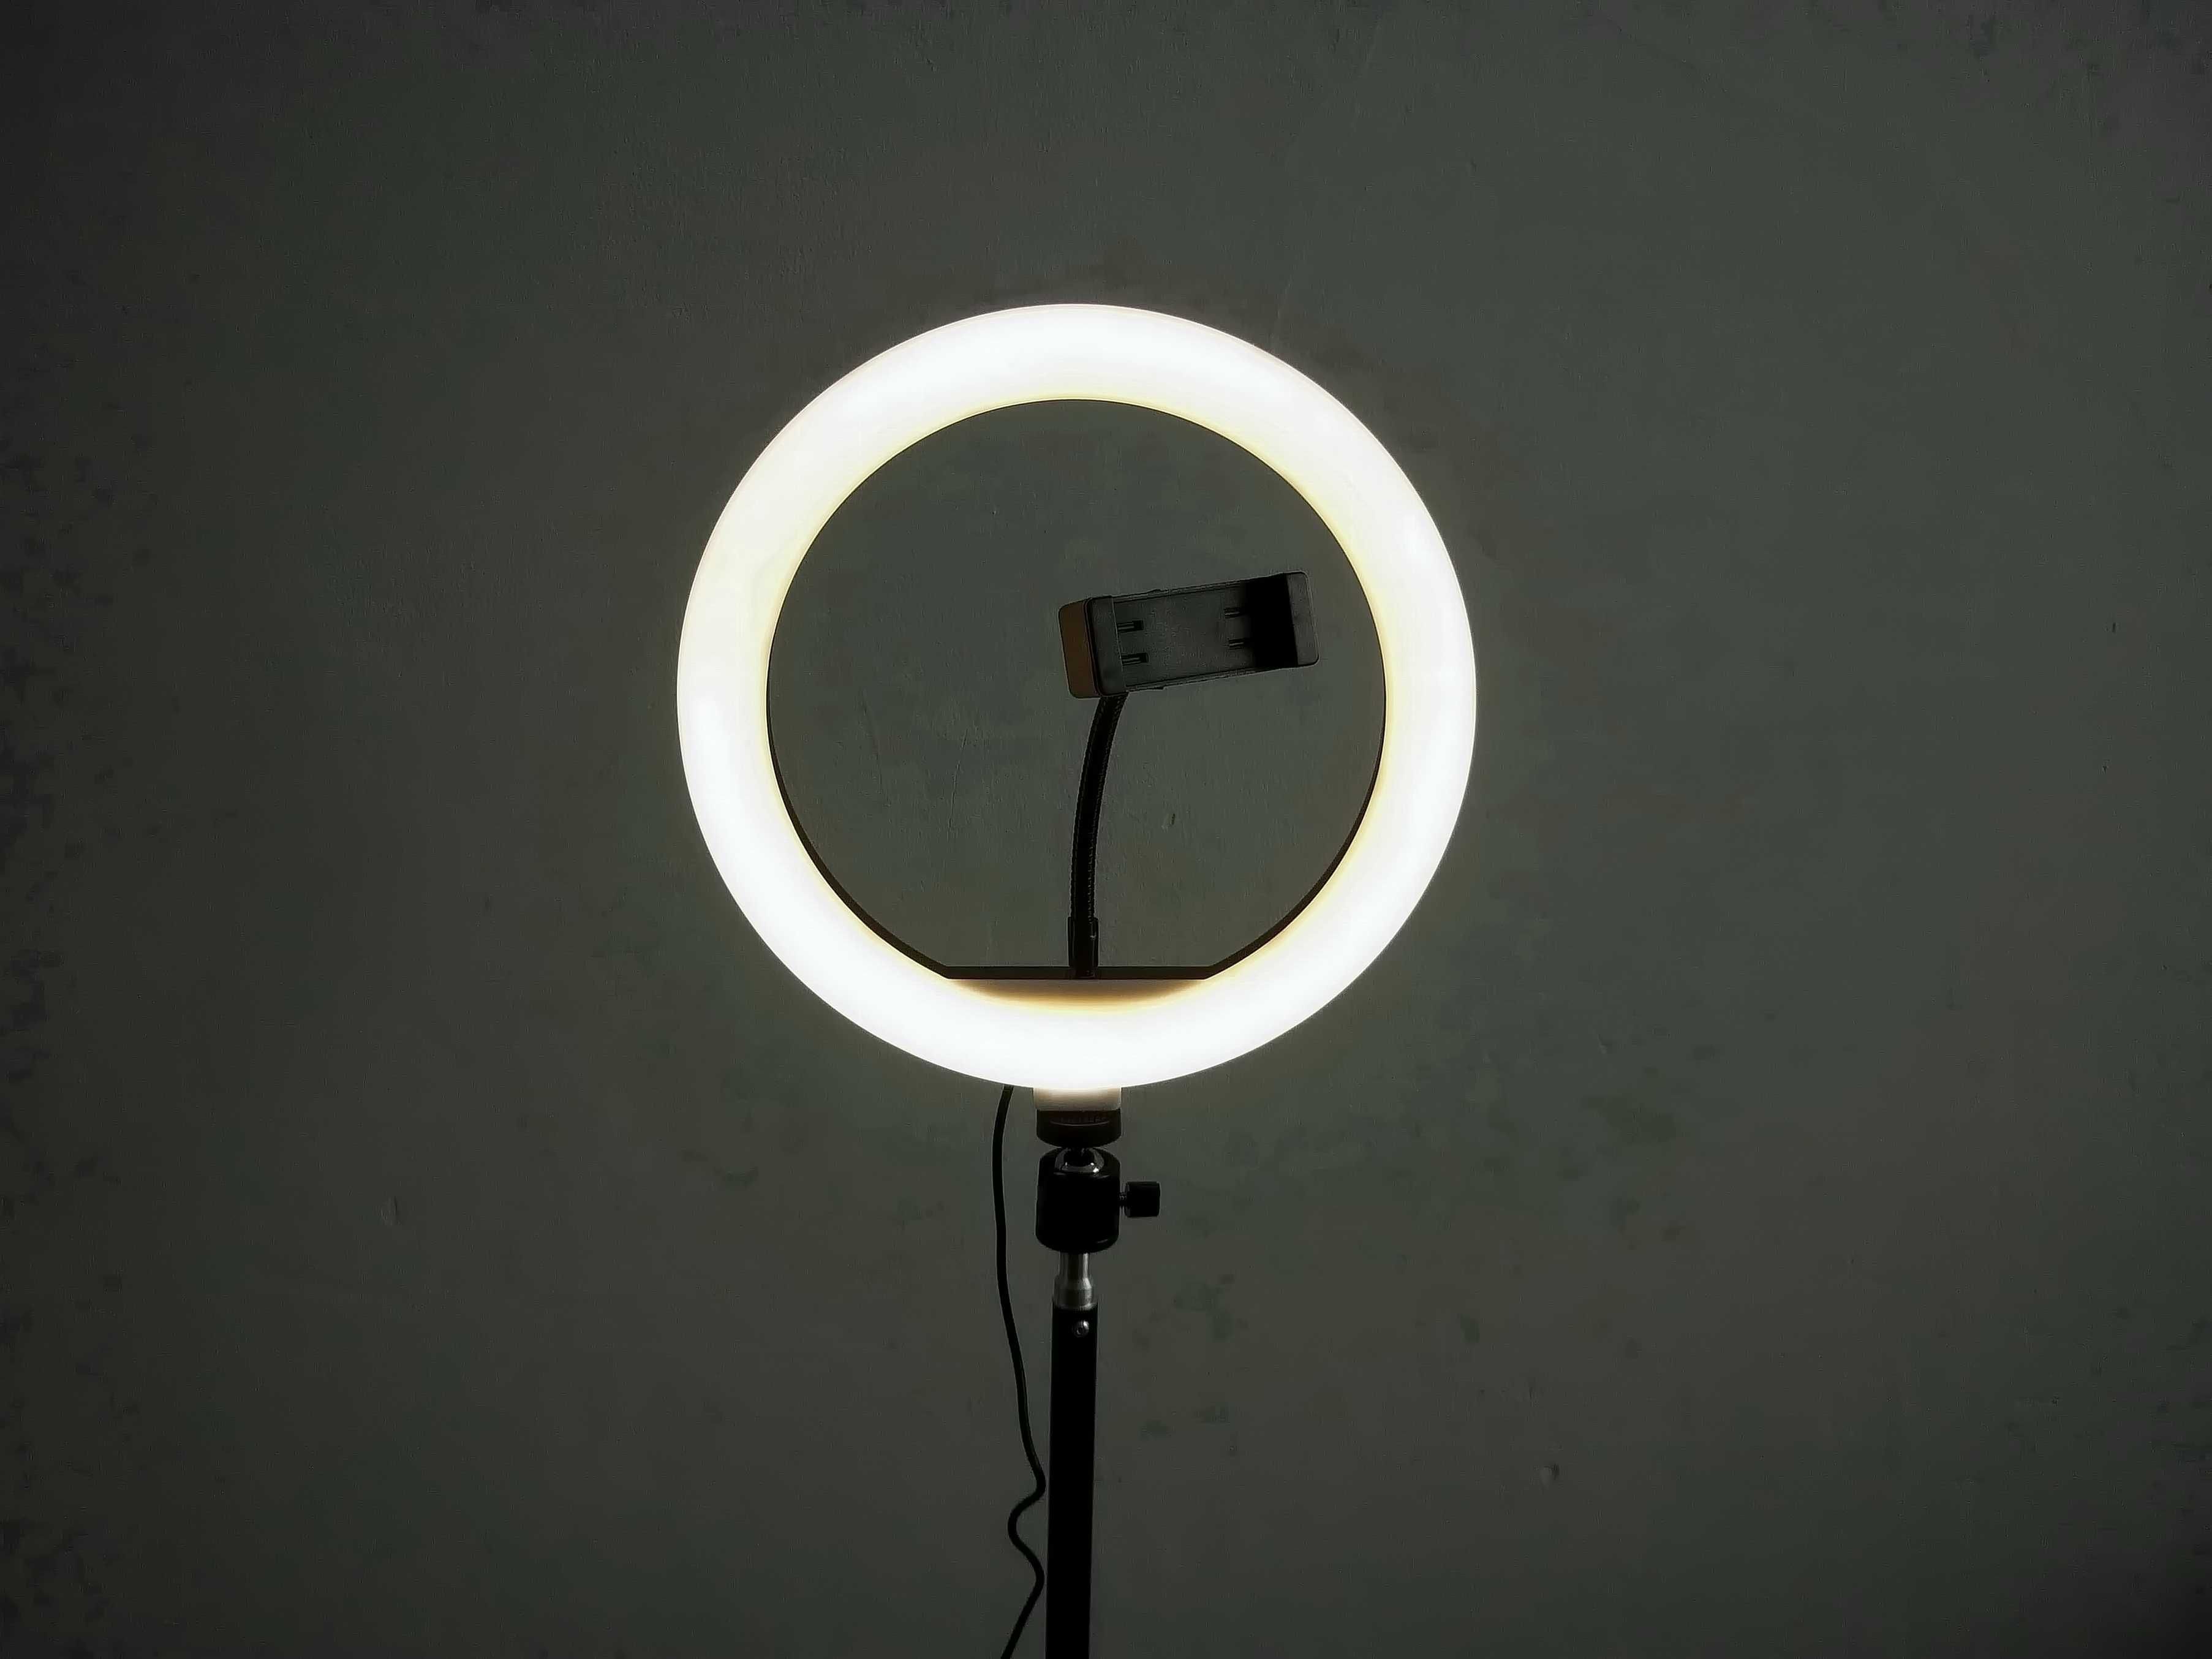 Кольцевая лампа 33см и штатив- набор для начинающего фотографа